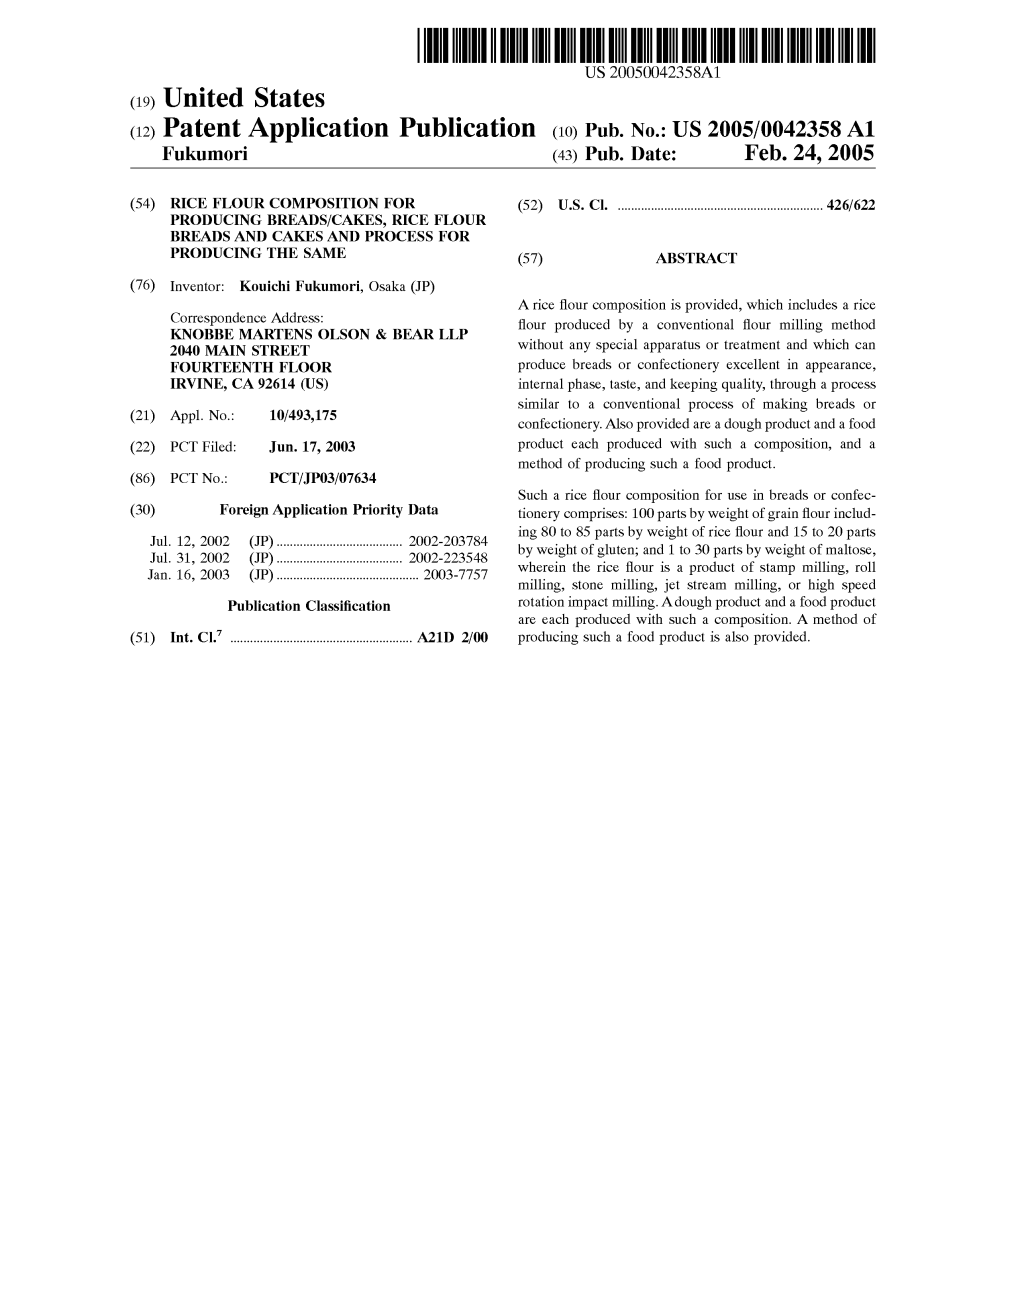 (12) Patent Application Publication (10) Pub. No.: US 2005/0042358A1 Fukumori (43) Pub